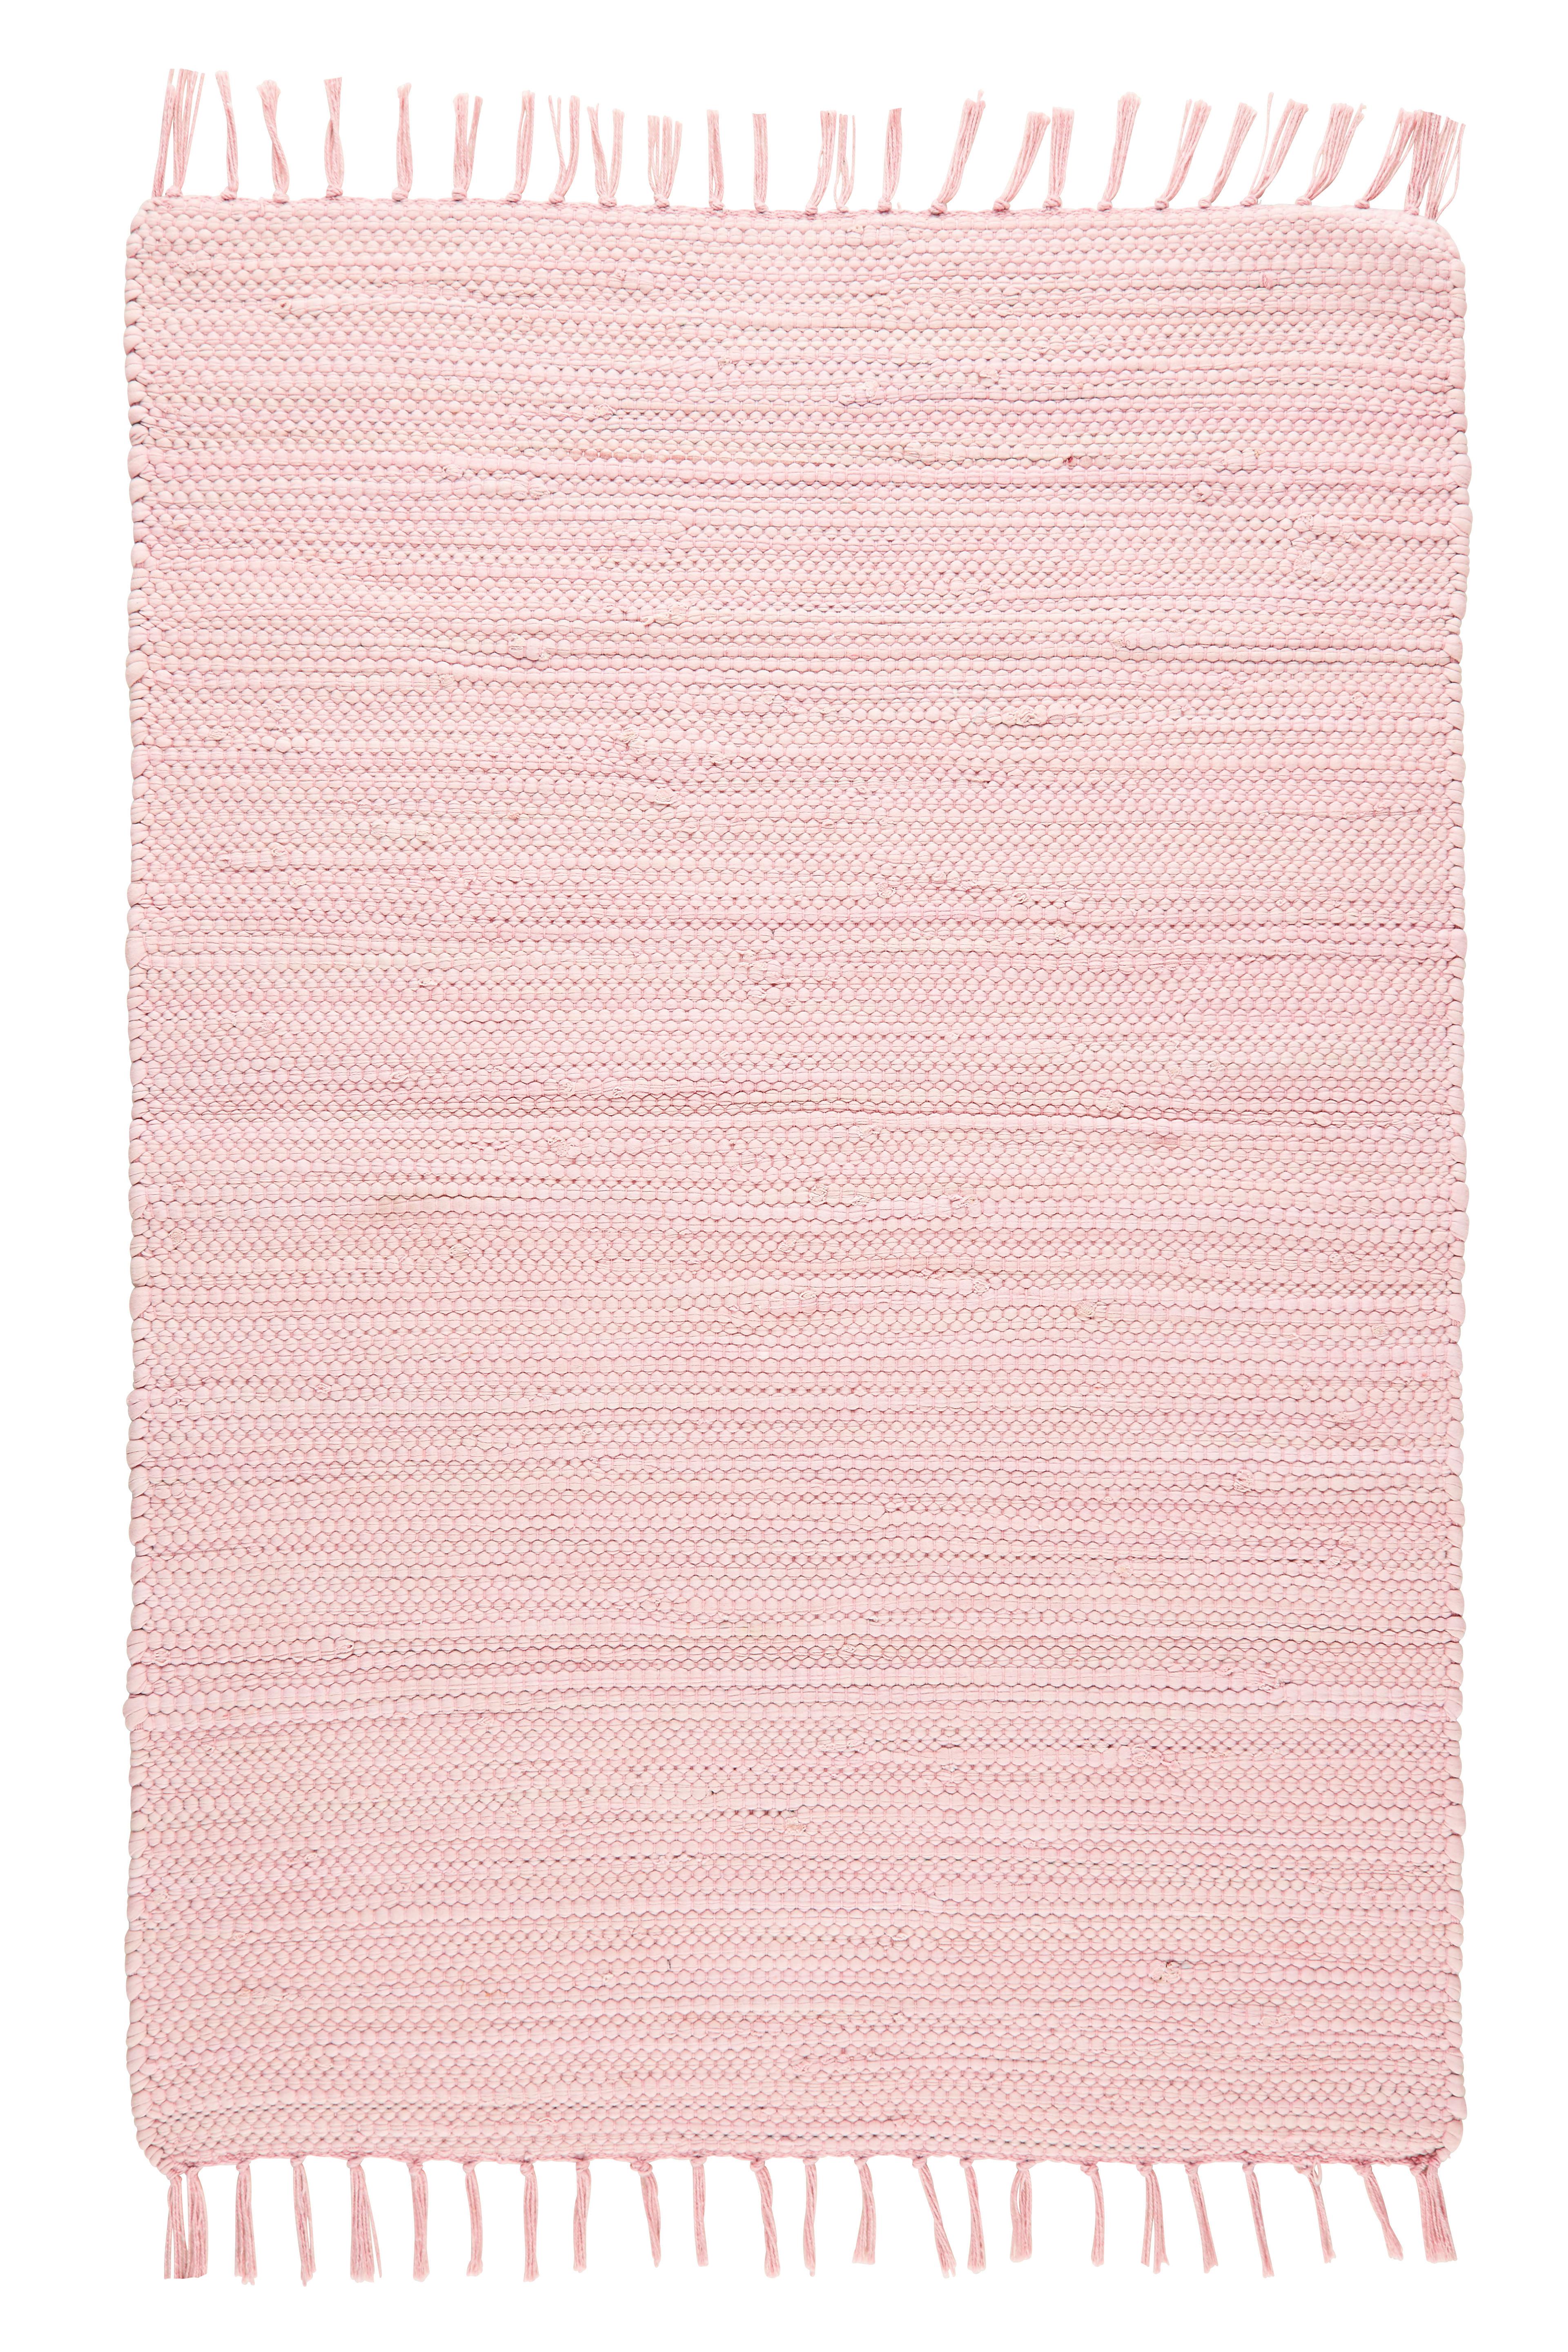 Tkaný Handričkový Koberec Julia 2, 70/130cm, Ružová - ružová, Romantický / Vidiecky, textil (70/130cm) - Modern Living